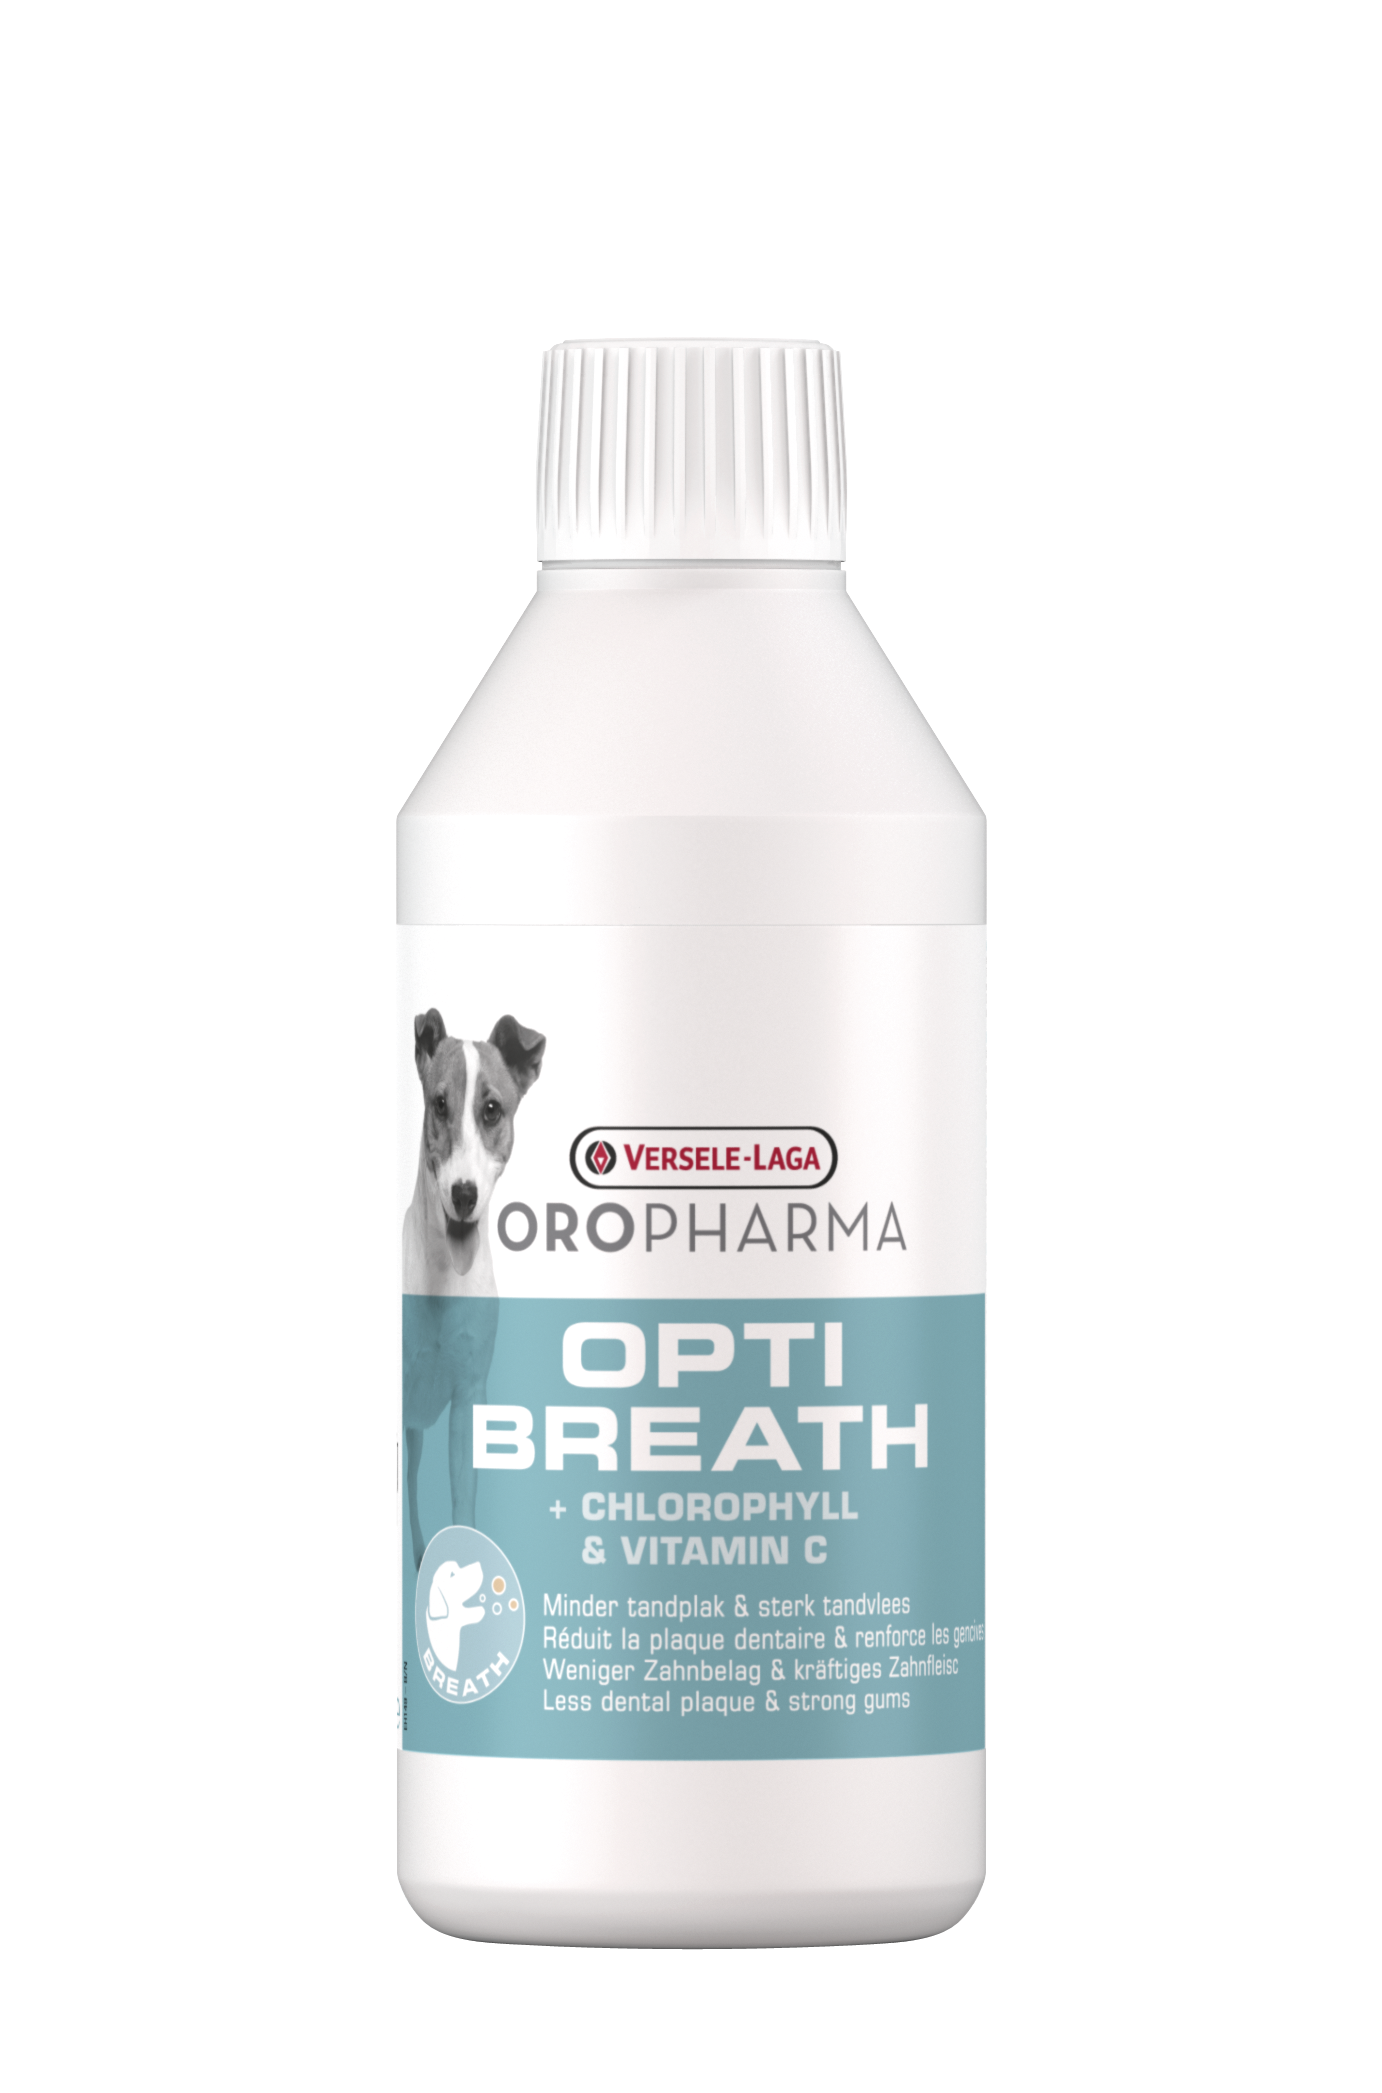 Oropharma opti breath